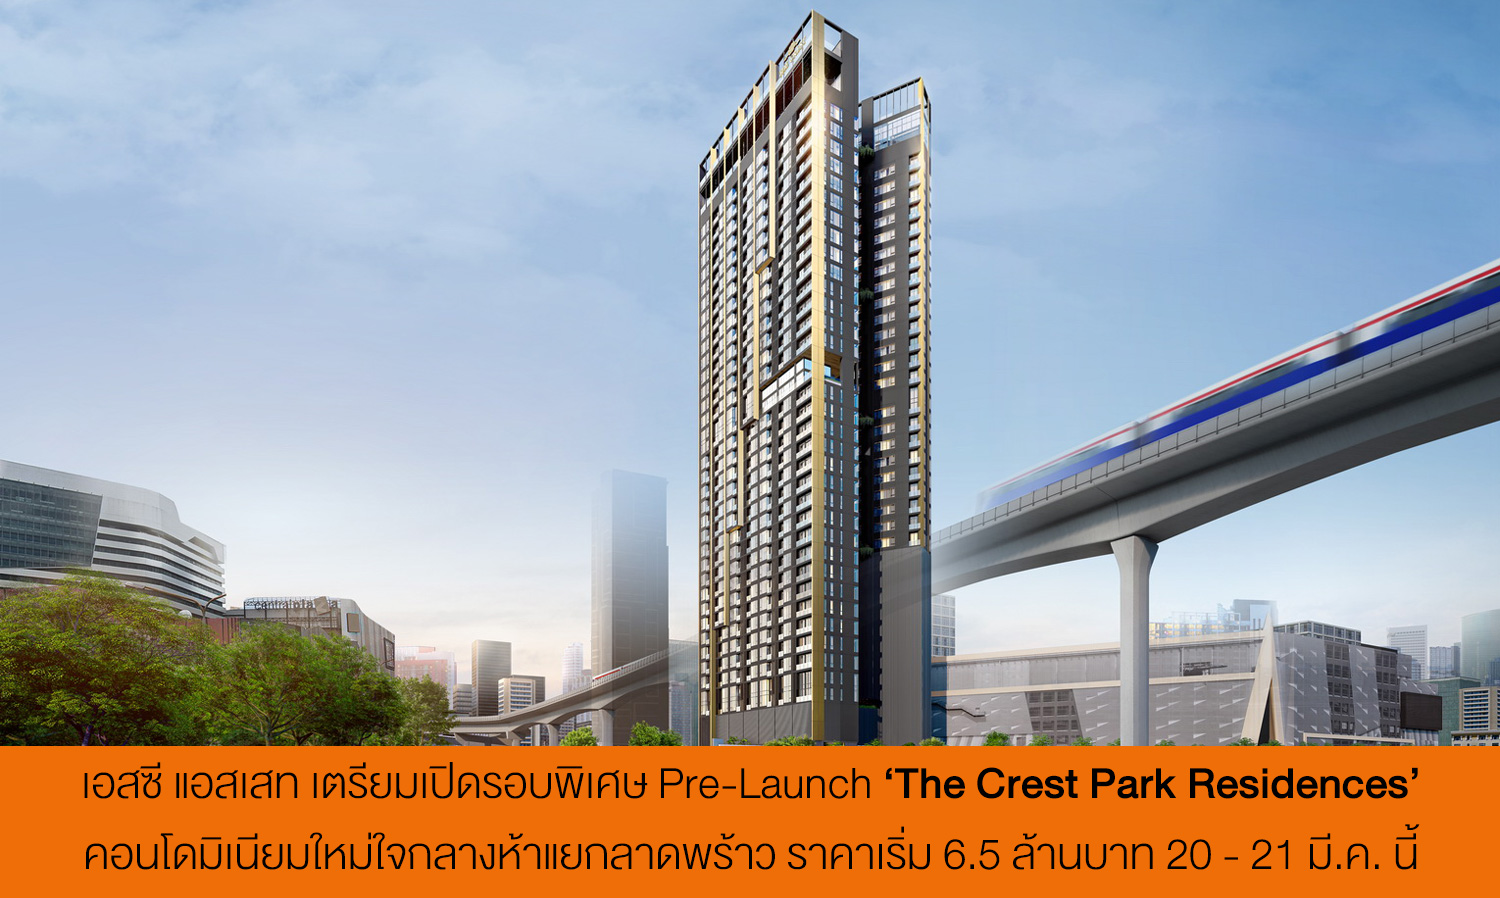 เอสซี แอสเสท เตรียมเปิดรอบพิเศษ Pre-Launch ‘The Crest Park Residences’